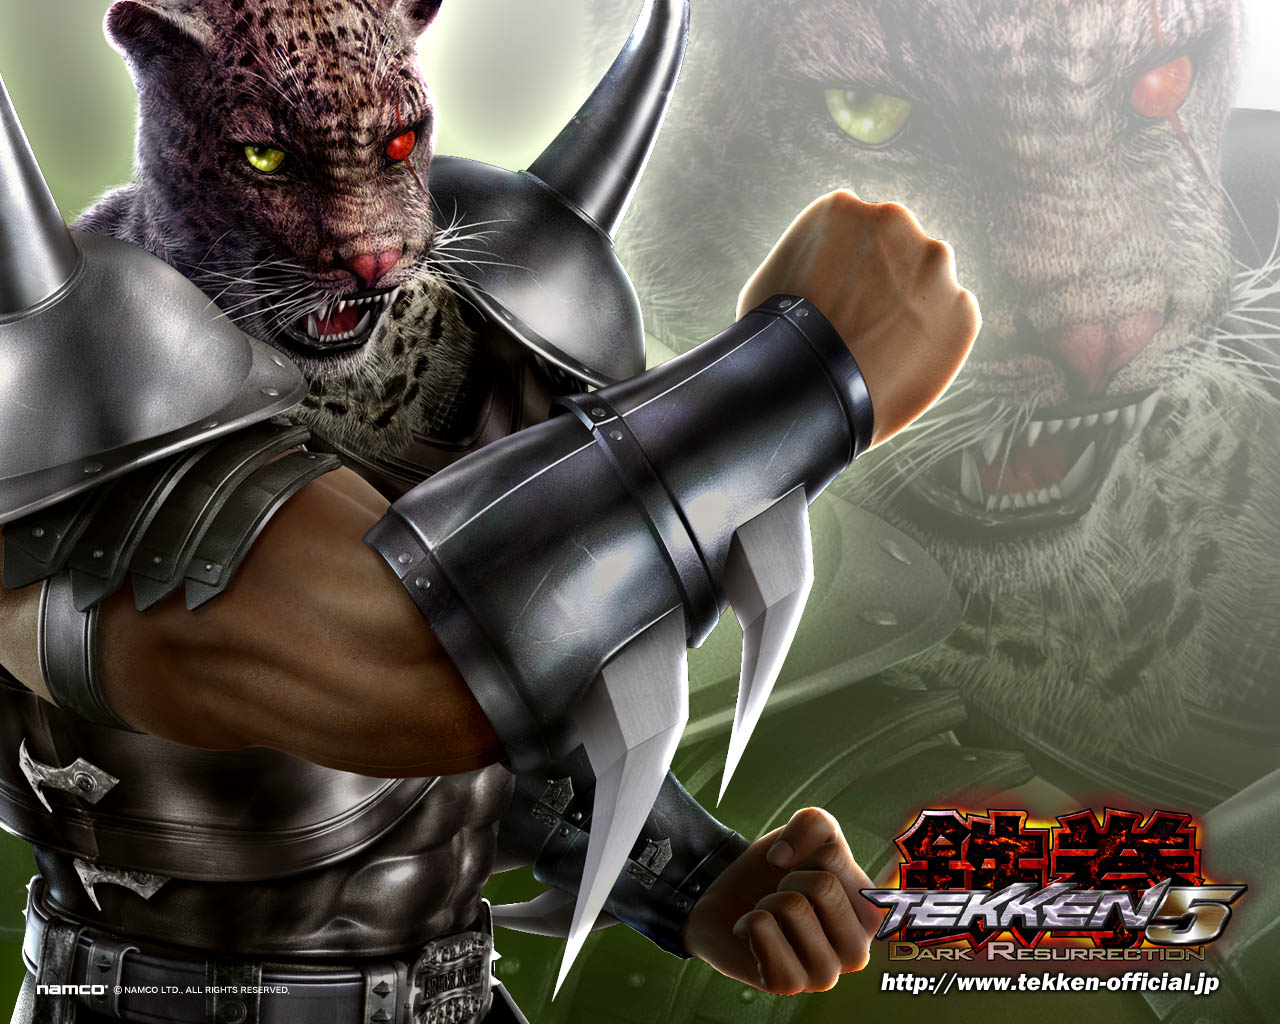 Tekken Dark Resurrection Wallpaper Armor King